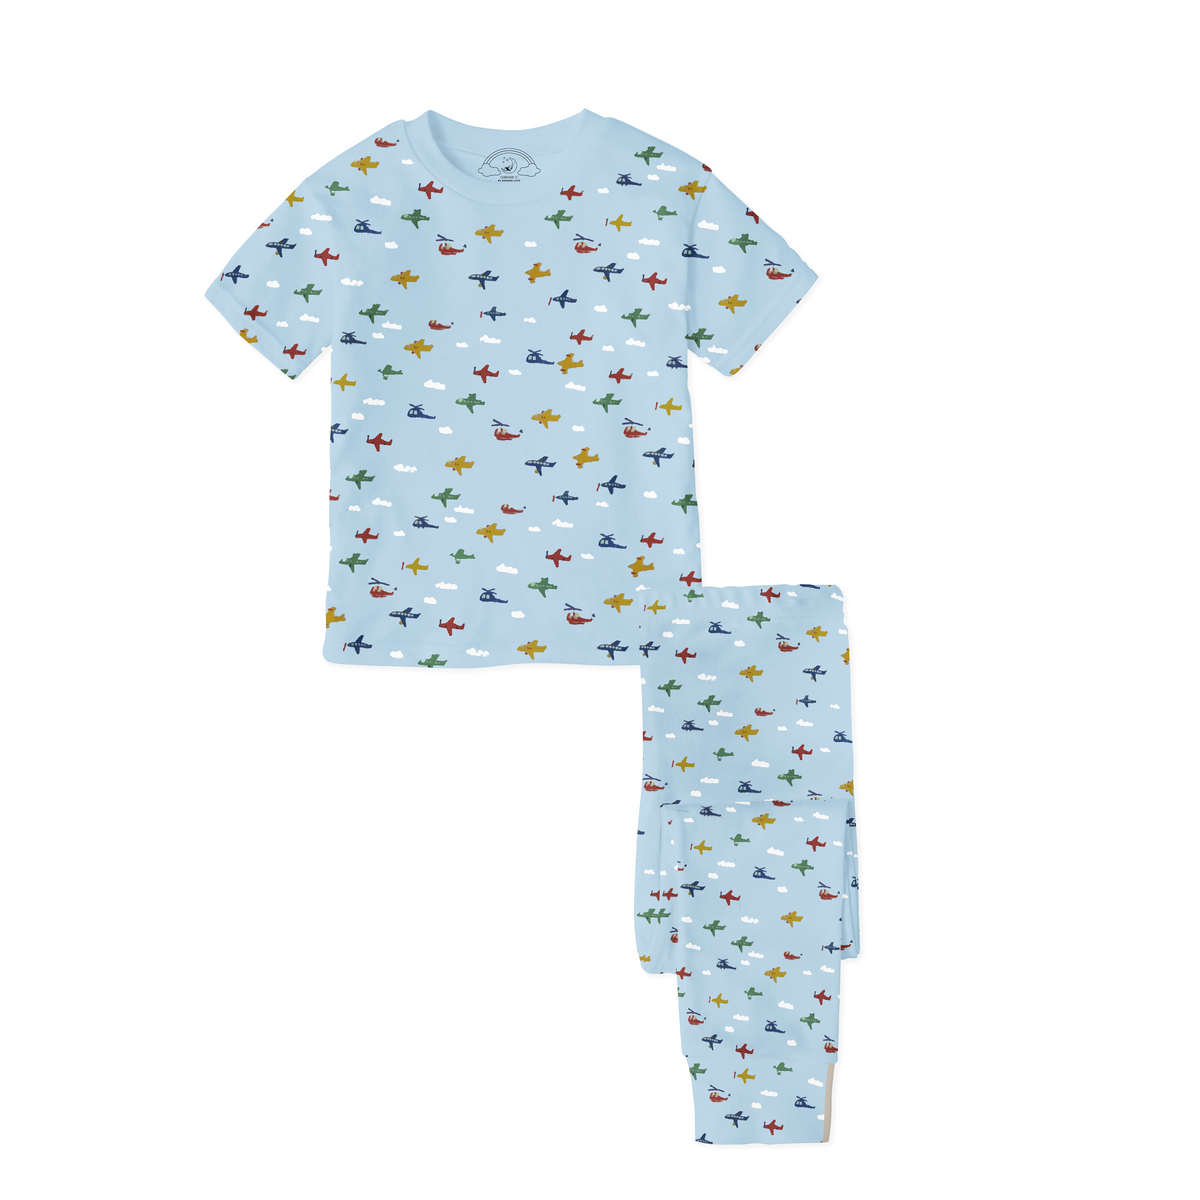 Airplane print Kids Pajamas – 12 AM By Khawar Latif